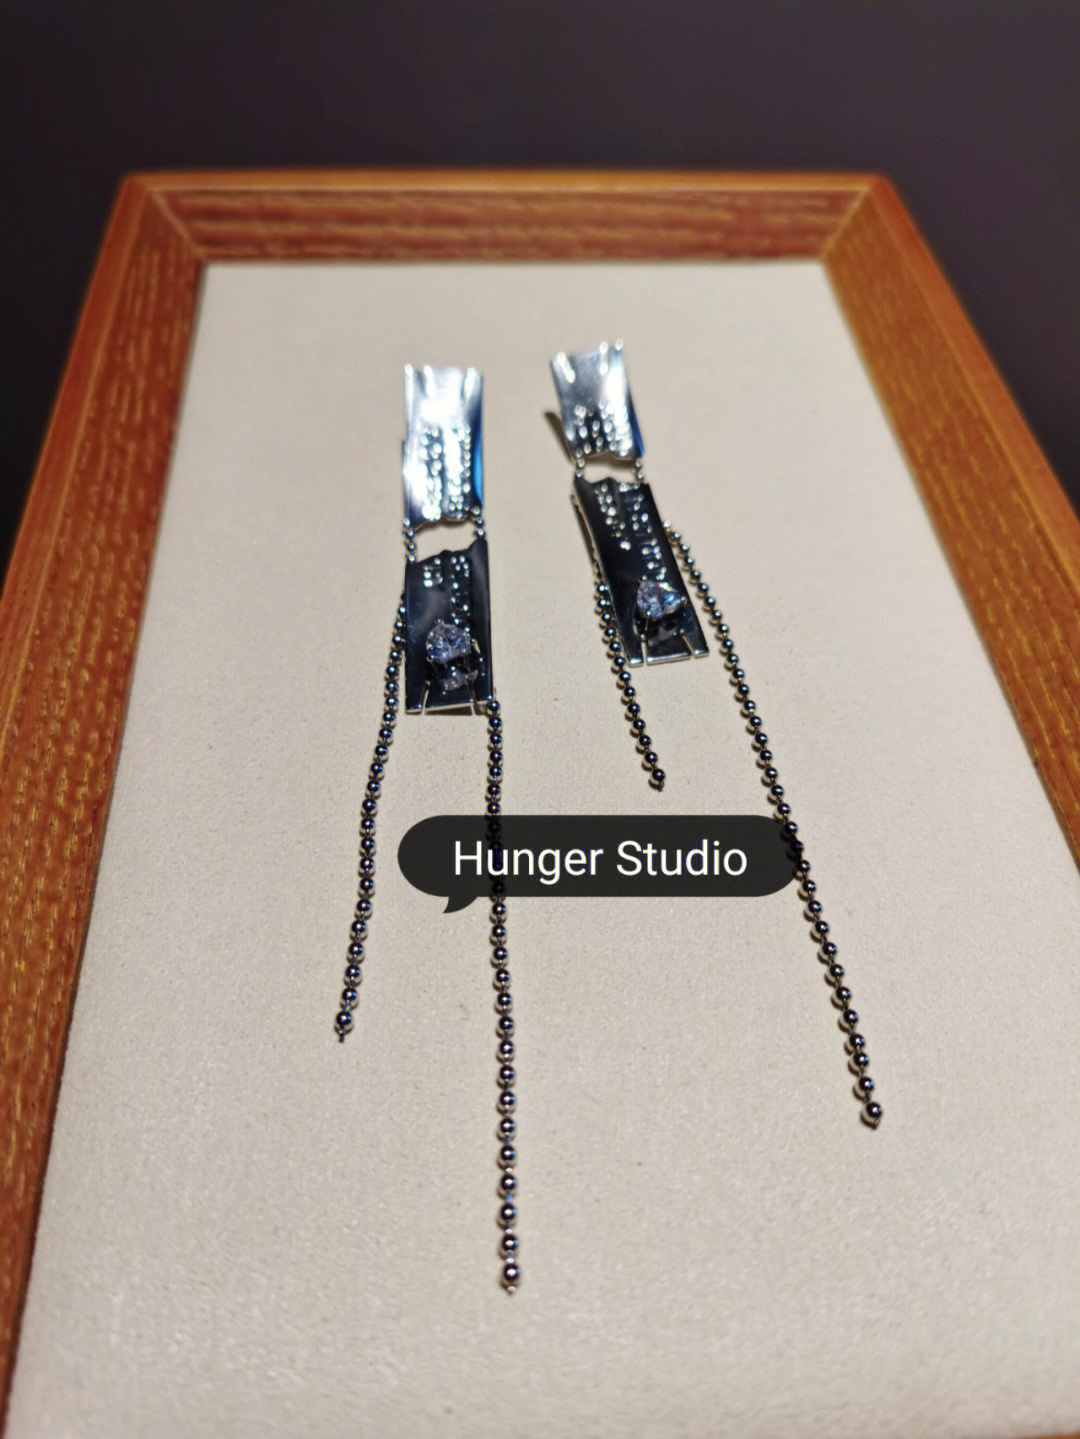 hunger studio